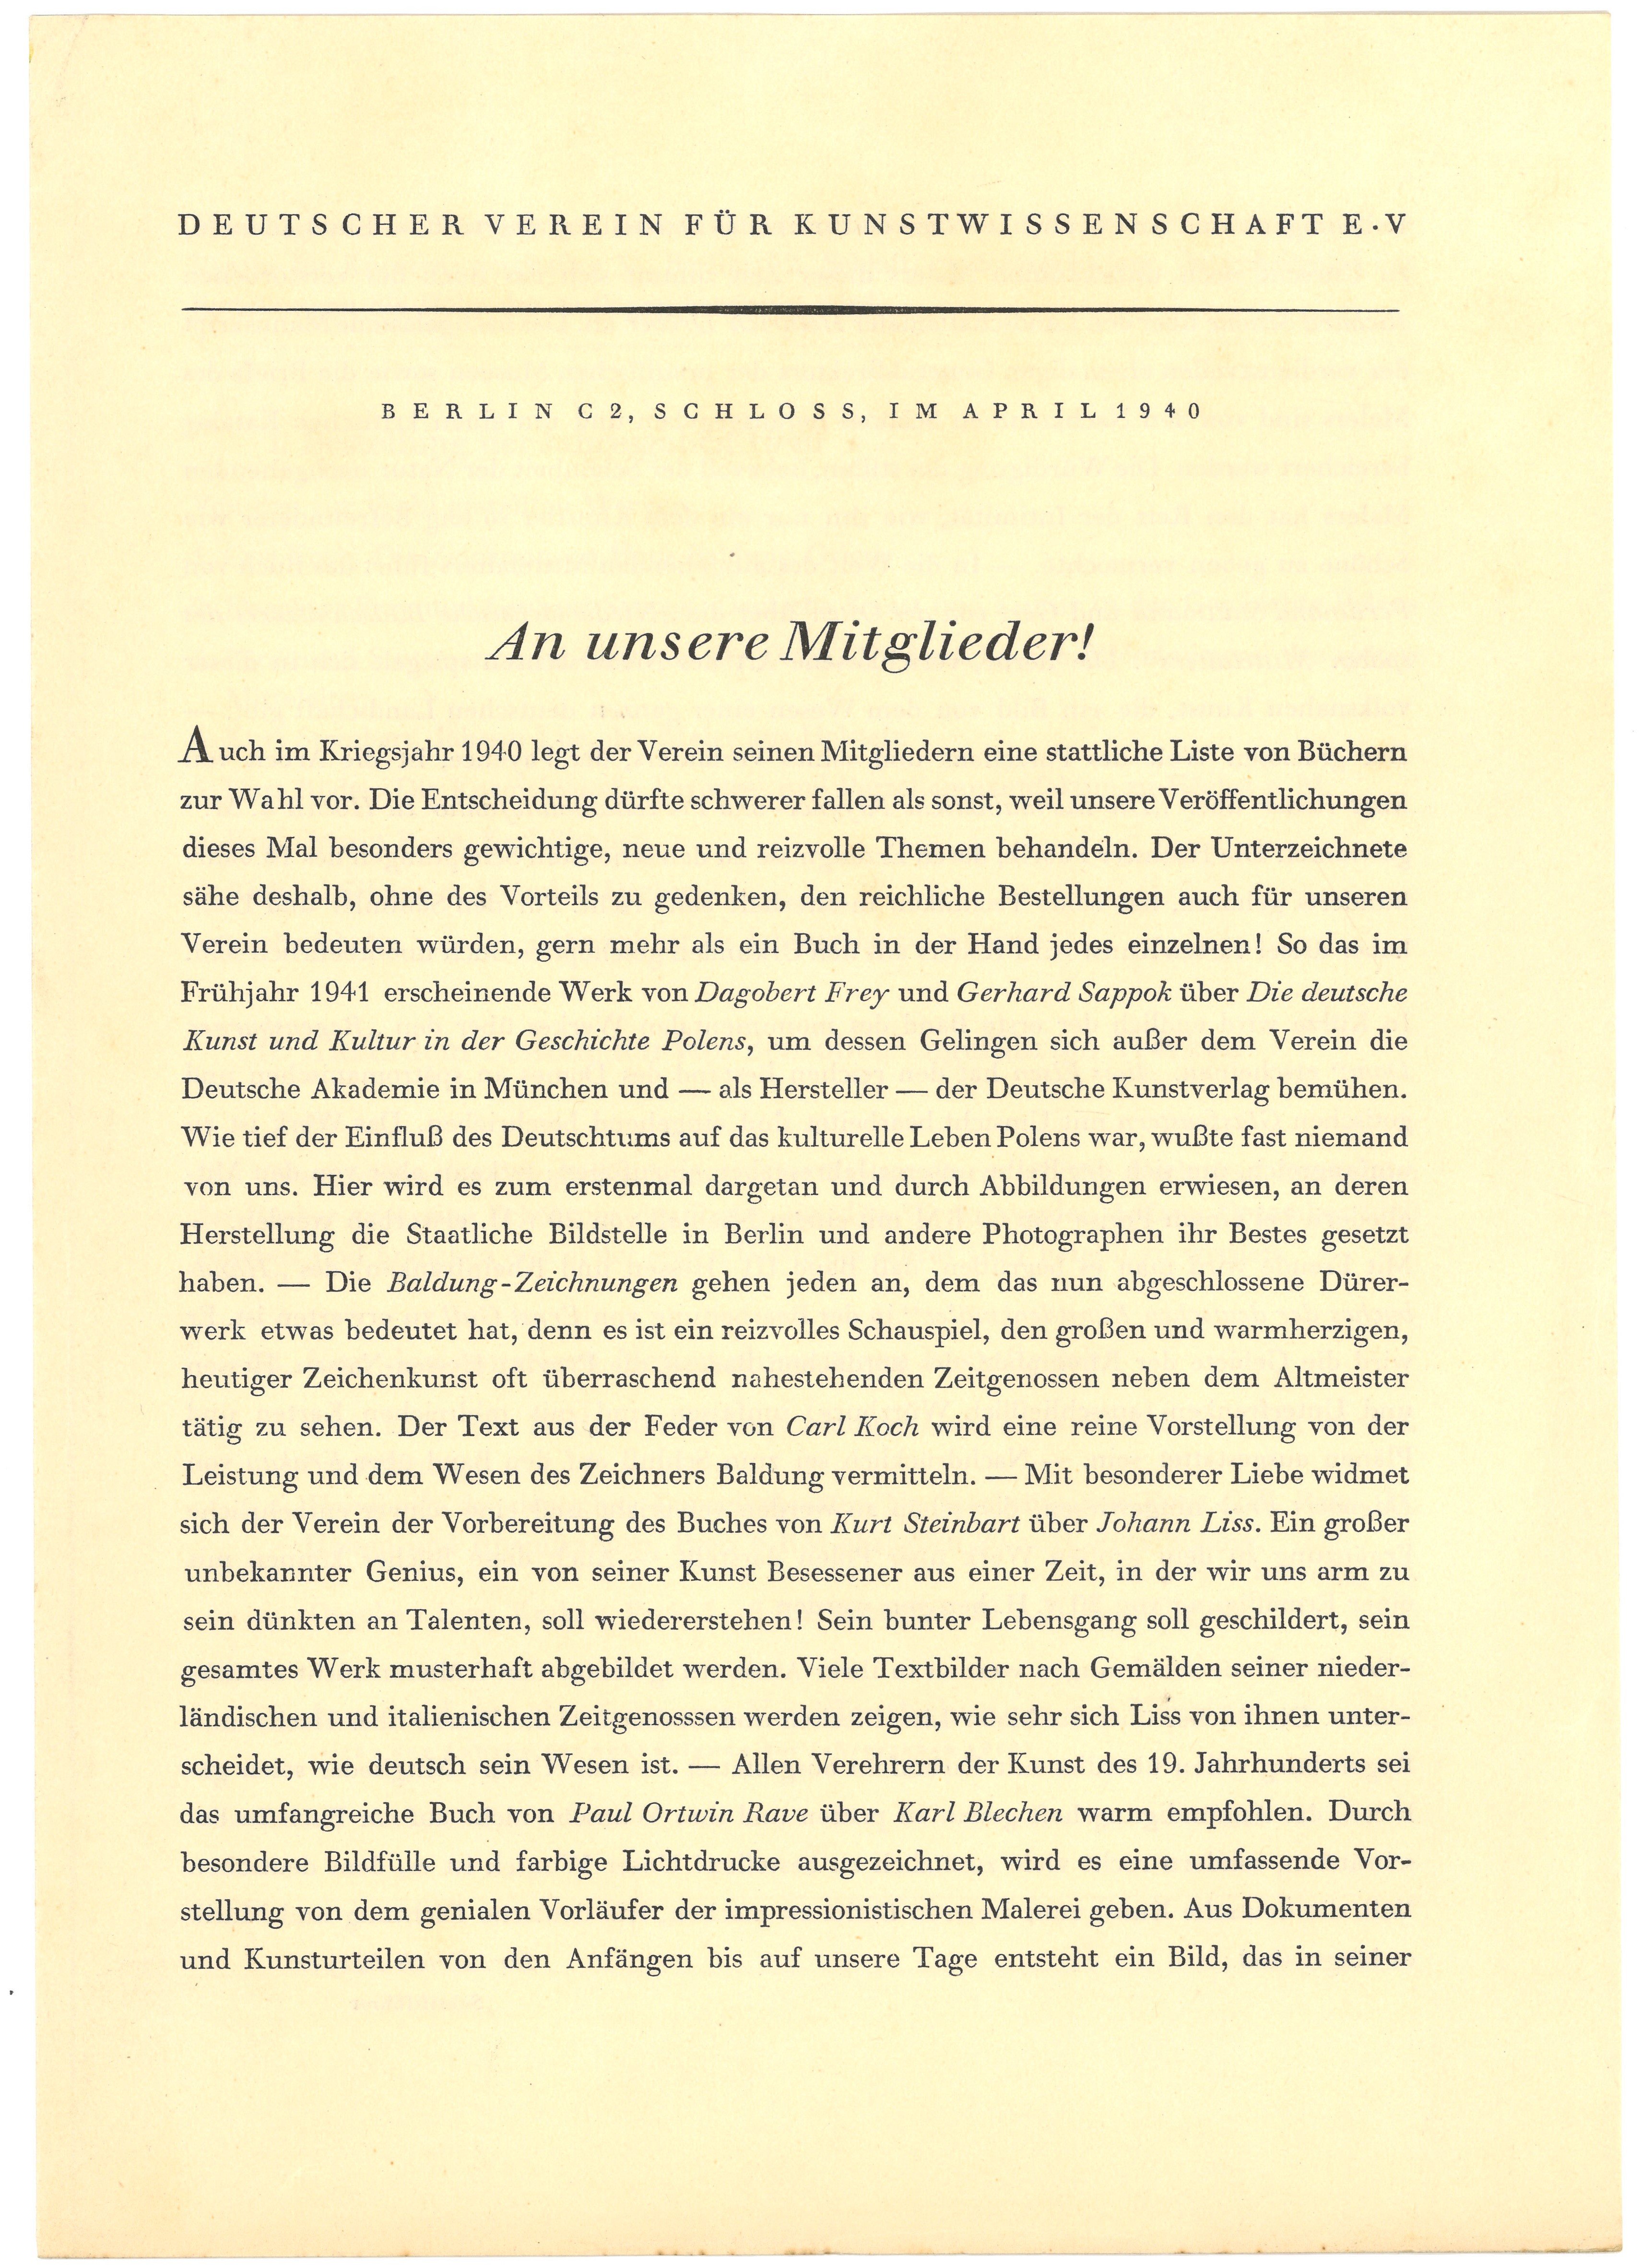 Mitgliederinformation des Deutschen Vereins für Kunstwissenschaft 1940 (Landesgeschichtliche Vereinigung für die Mark Brandenburg e.V., Archiv CC BY)